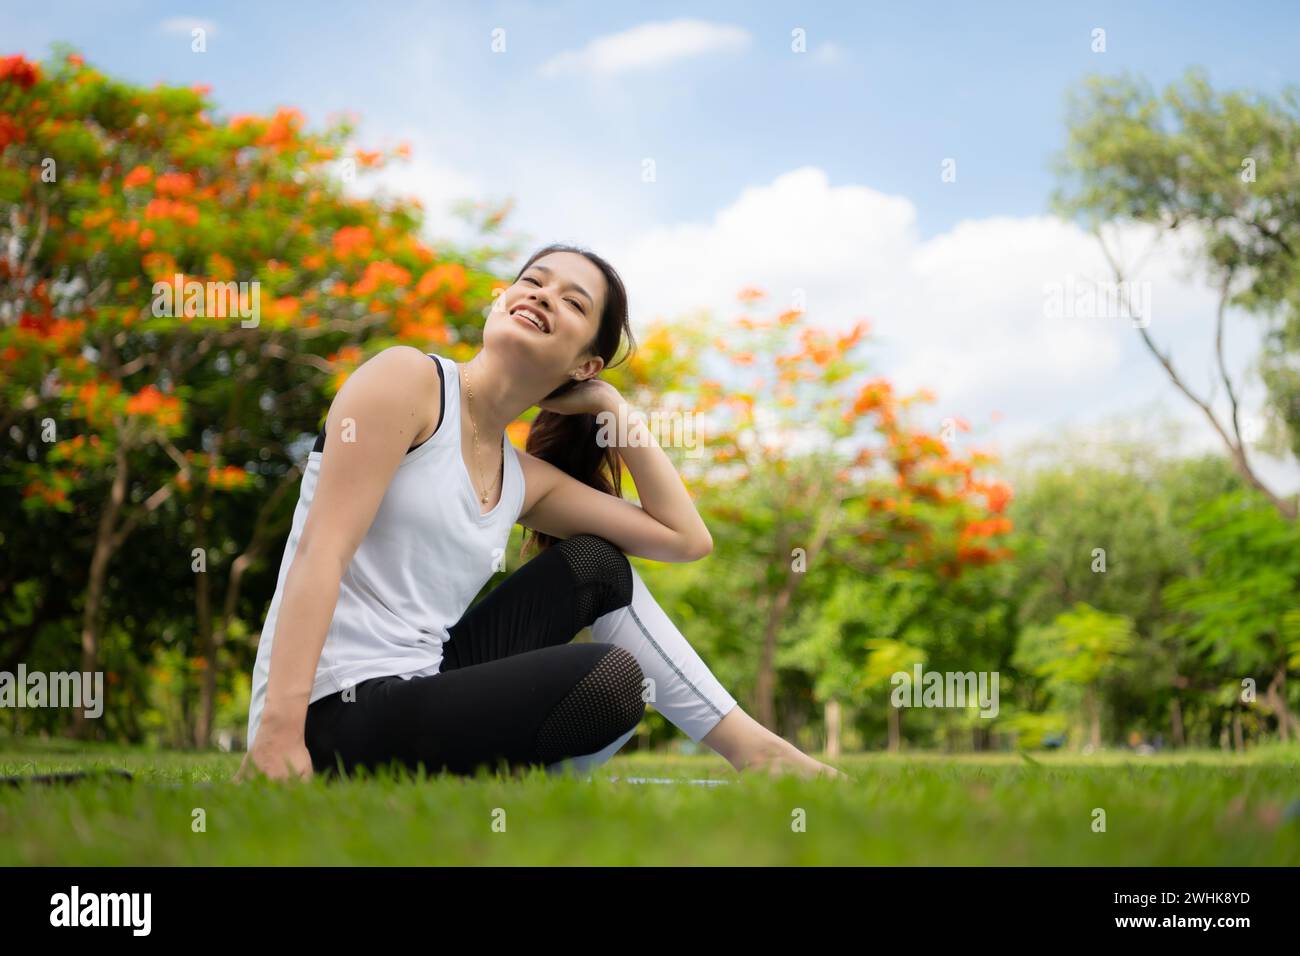 Junge Frau mit Outdoor-Aktivitäten im Stadtpark, Yoga ist ihre gewählte Aktivität. Stockfoto